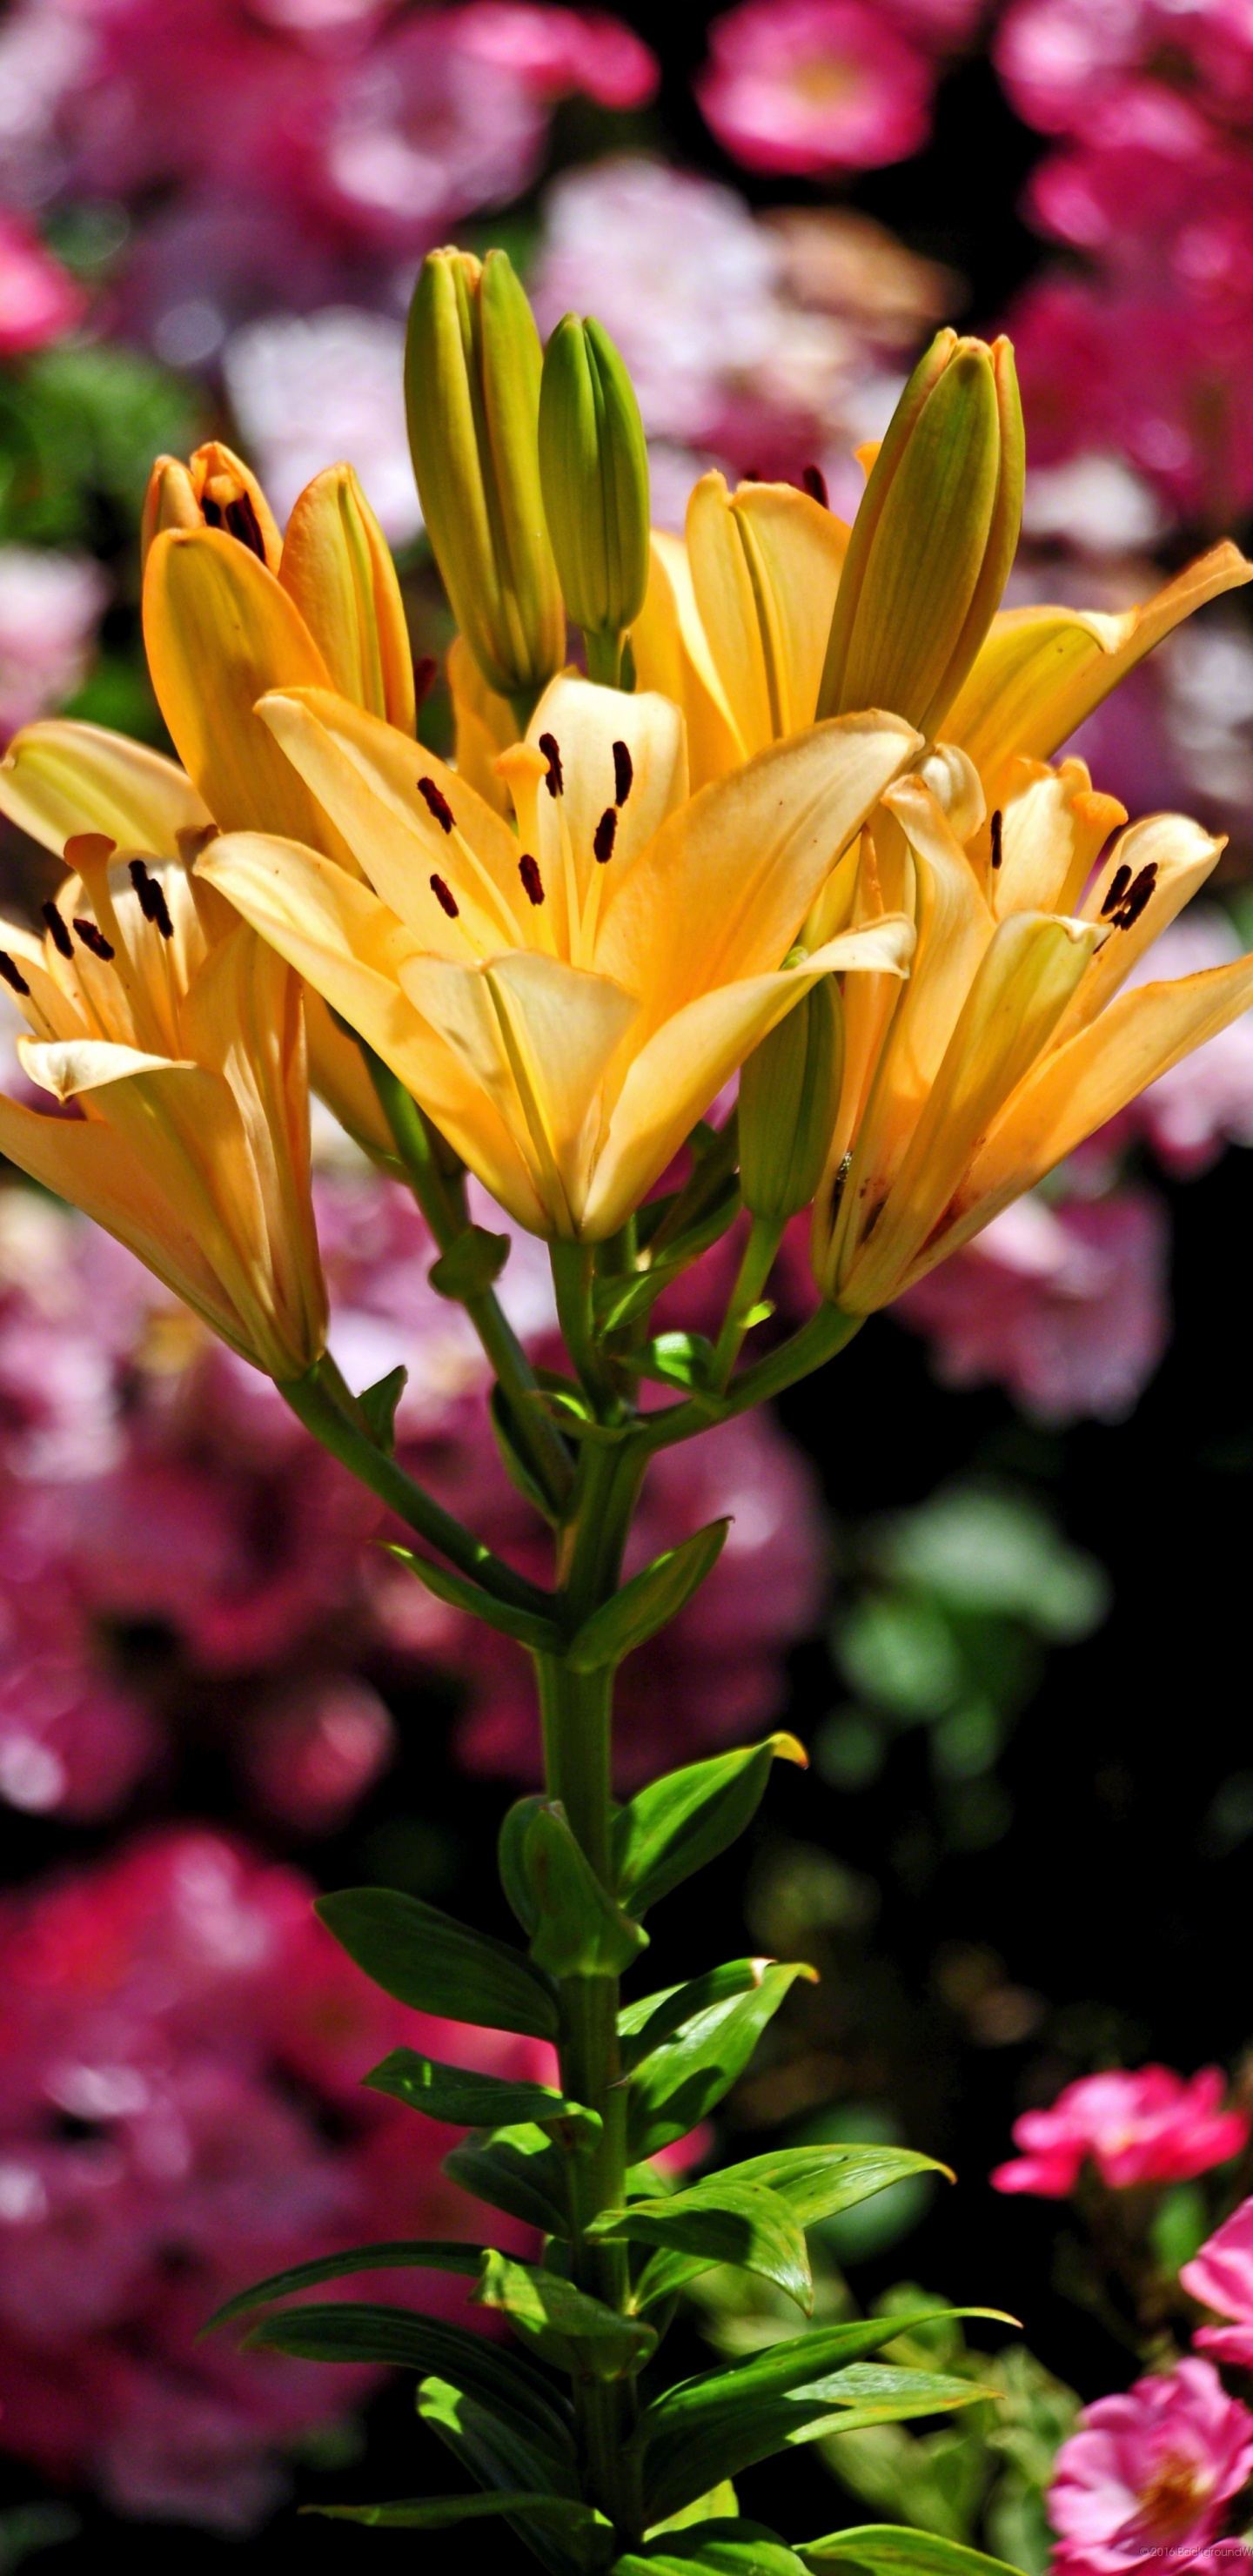 Yellow Flower in Tilt Shift Lens. Wallpaper in 1440x2960 Resolution